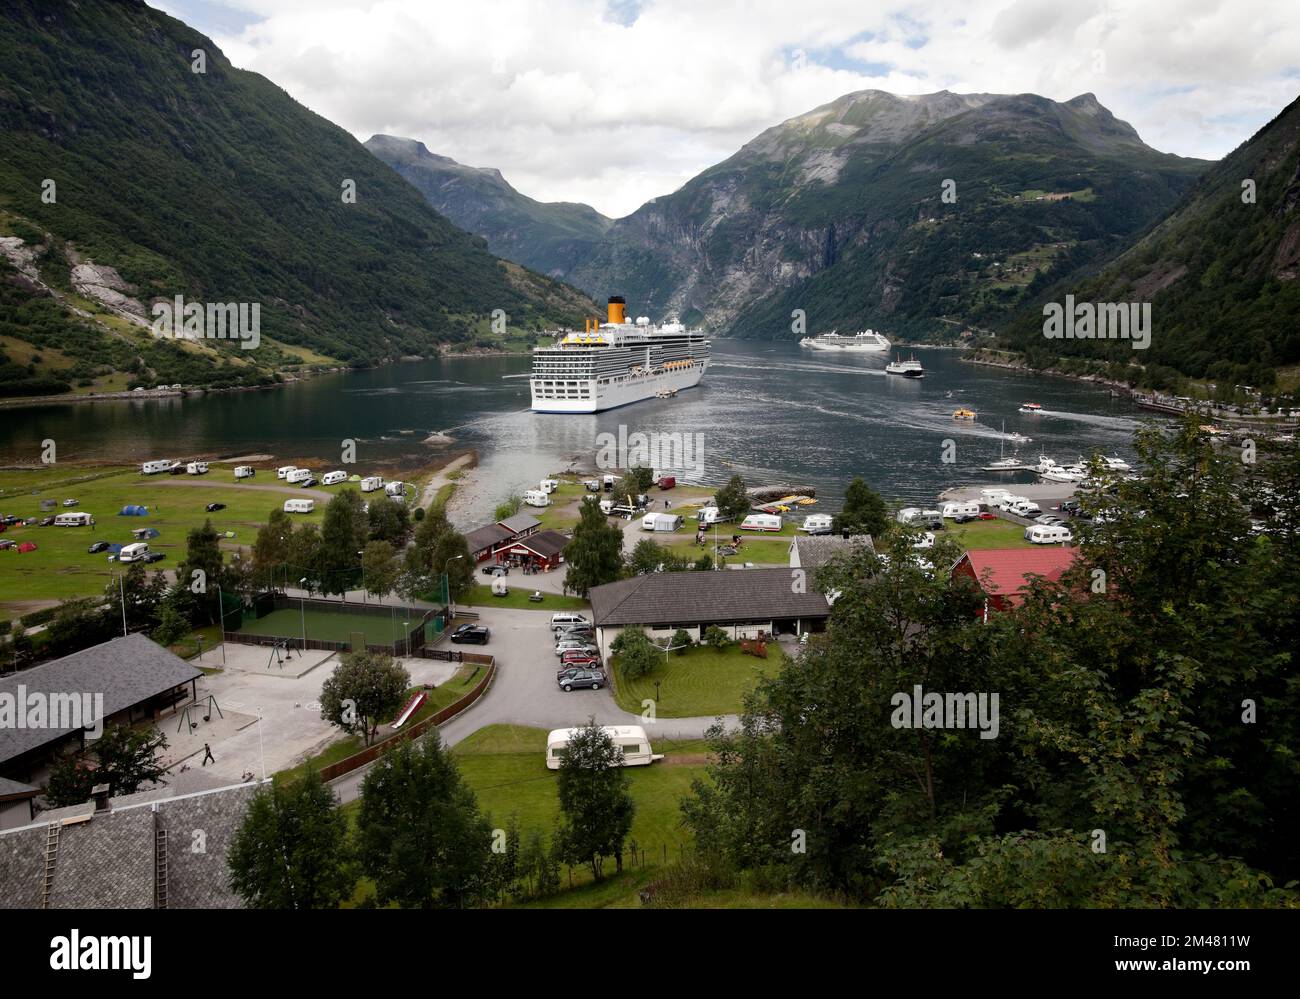 Geiranger- Norvège- Circa août 2010. Grand bateau de croisière de Costa Cruise Company ancré dans le fjord Geiranger. Vue panoramique sur l'activité touristique o Banque D'Images